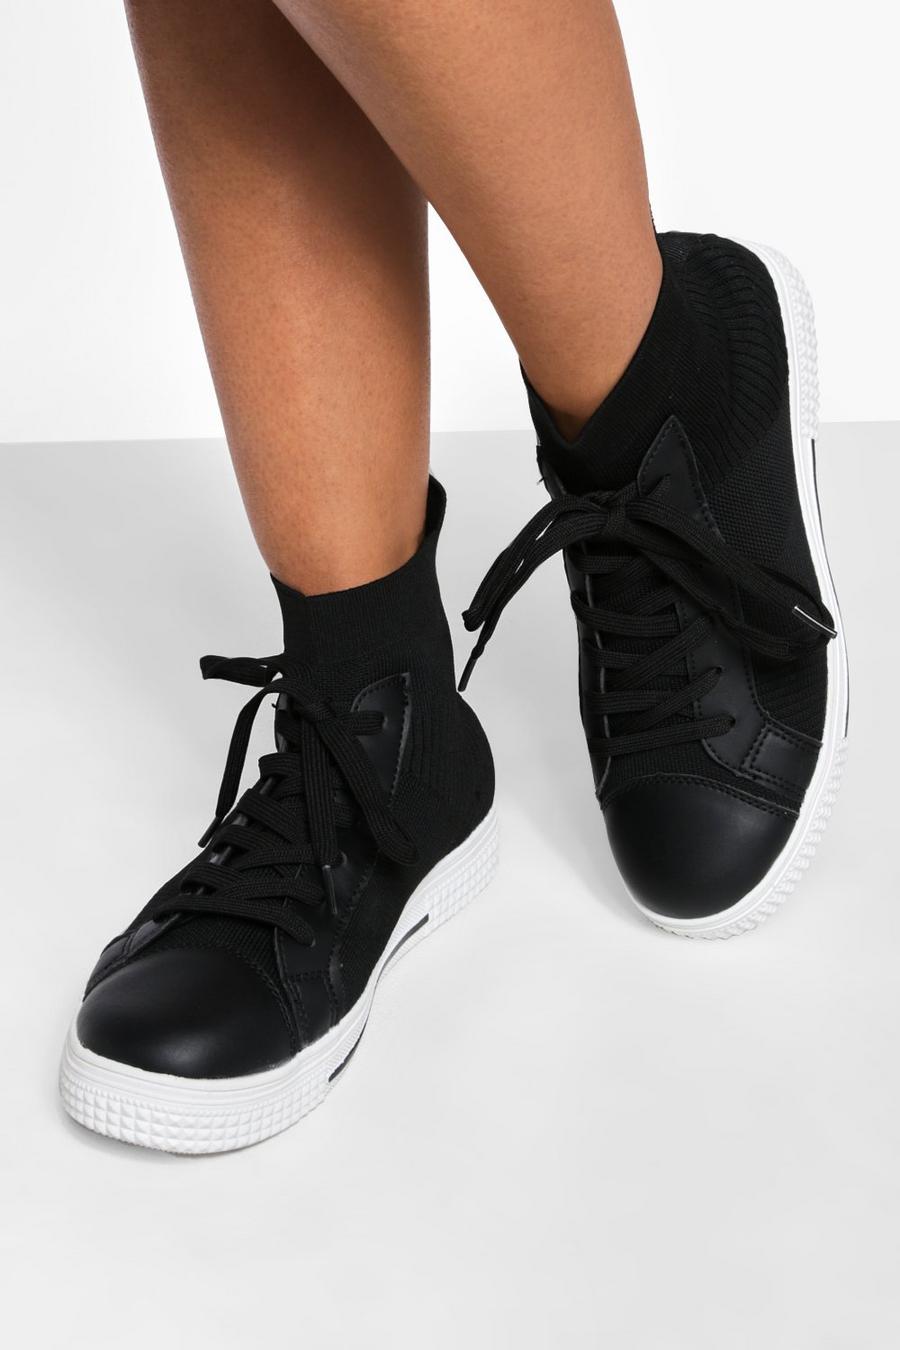 Zapatillas deportivas altas de tela, Black negro